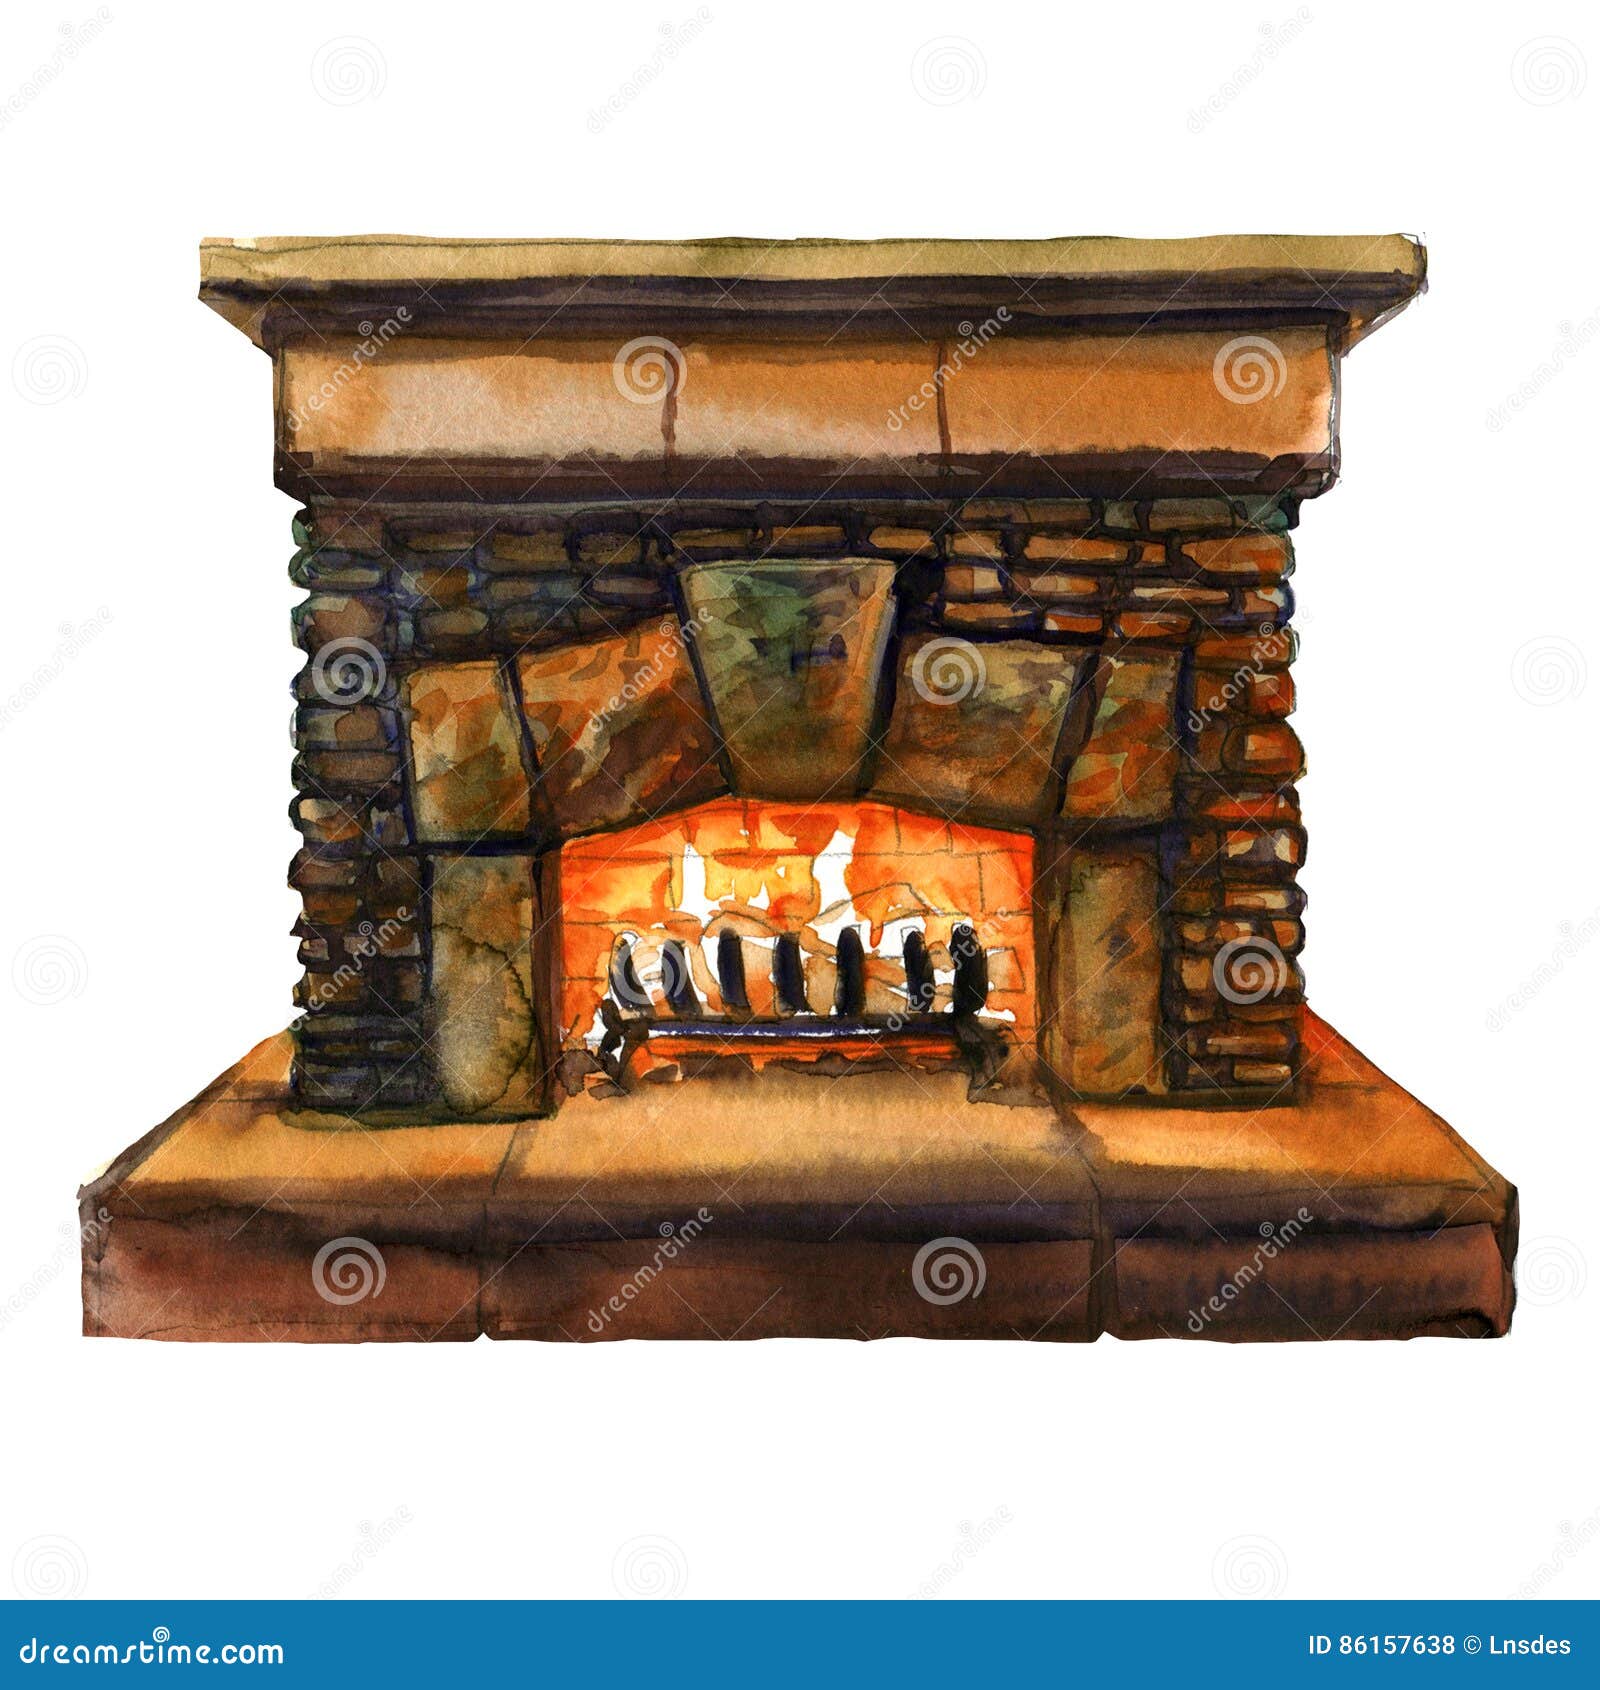 Πέτρινη εστία εγχώριων οικογενειών τούβλων με τη φλόγα, δάπεδο τζακιού με το κάψιμο της πυρκαγιάς, απεικόνιση watercolor. Σύμβολο του εγχώριου coziness, εστία εγχώριων οικογενειών τούβλων πετρών με τη φλόγα, δάπεδο τζακιού με το κάψιμο της πυρκαγιάς, απεικόνιση watercolor στο άσπρο υπόβαθρο